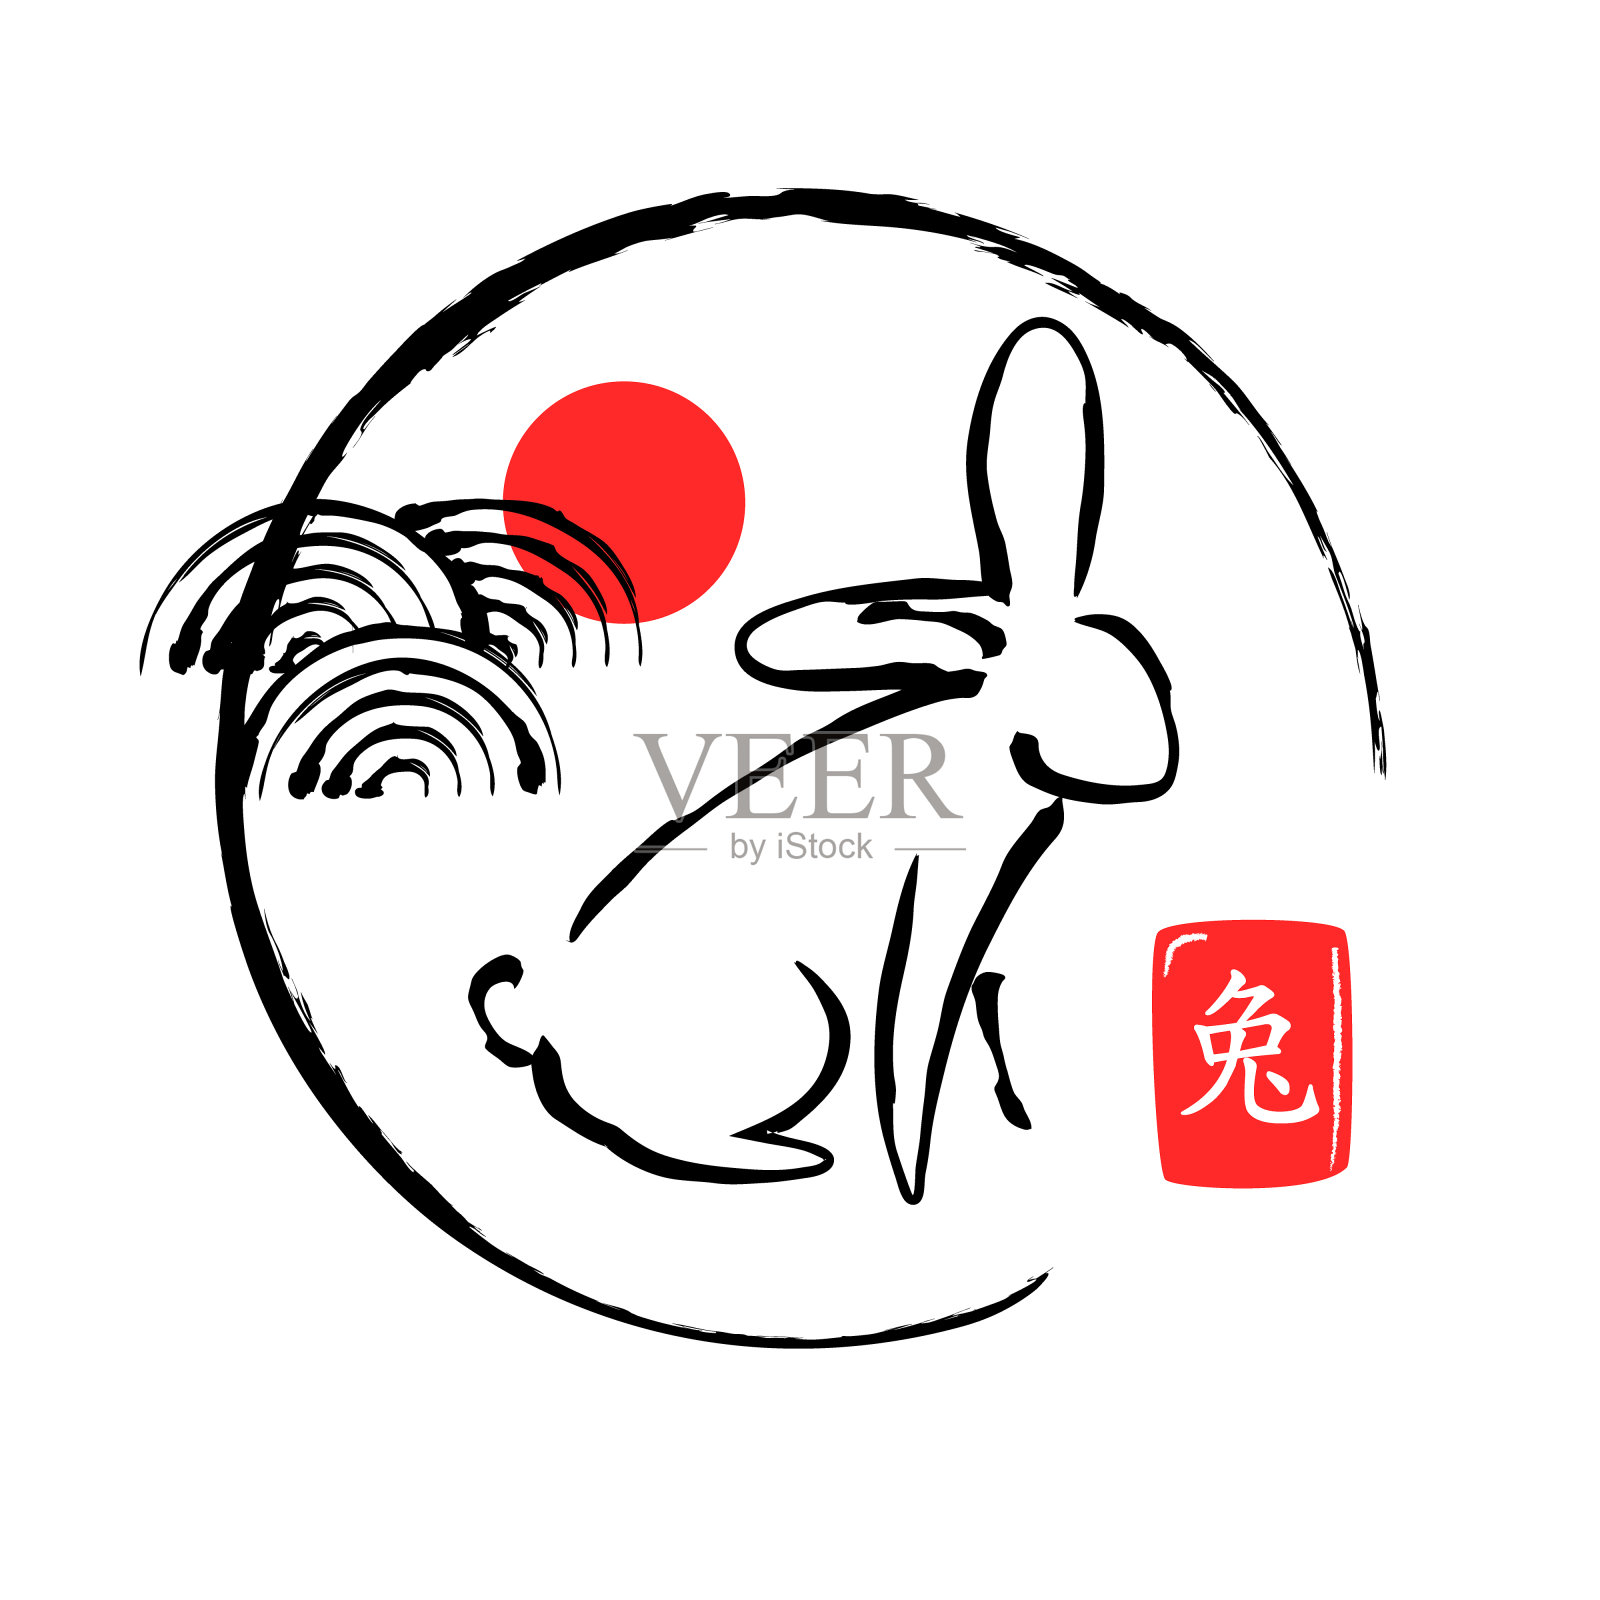 节日贺卡上有兔子、波浪、阳光。矢量插图在中国书法风格。设计元素图片